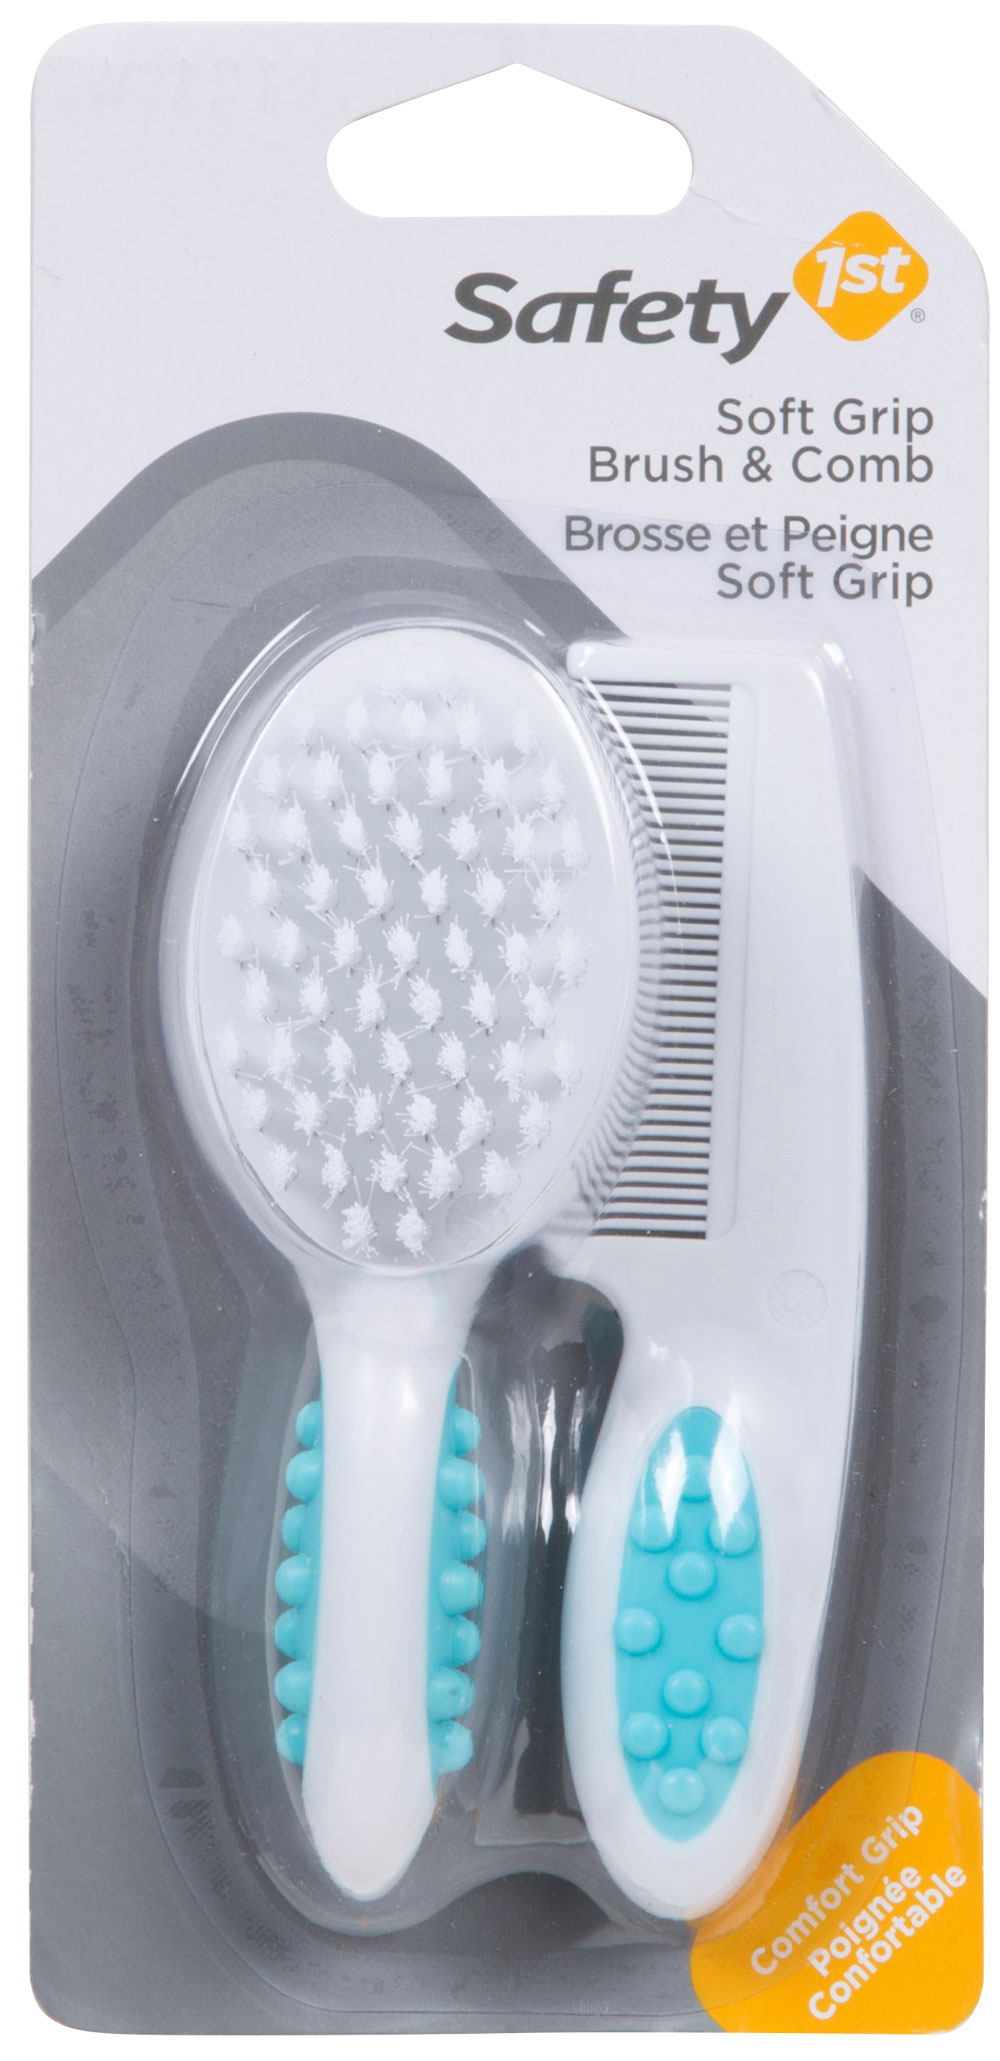 Buy Brosse et peigne Soft Grip de Safety 1st - Arctic Blue for CAD 4.99 | Toys R Us Canada